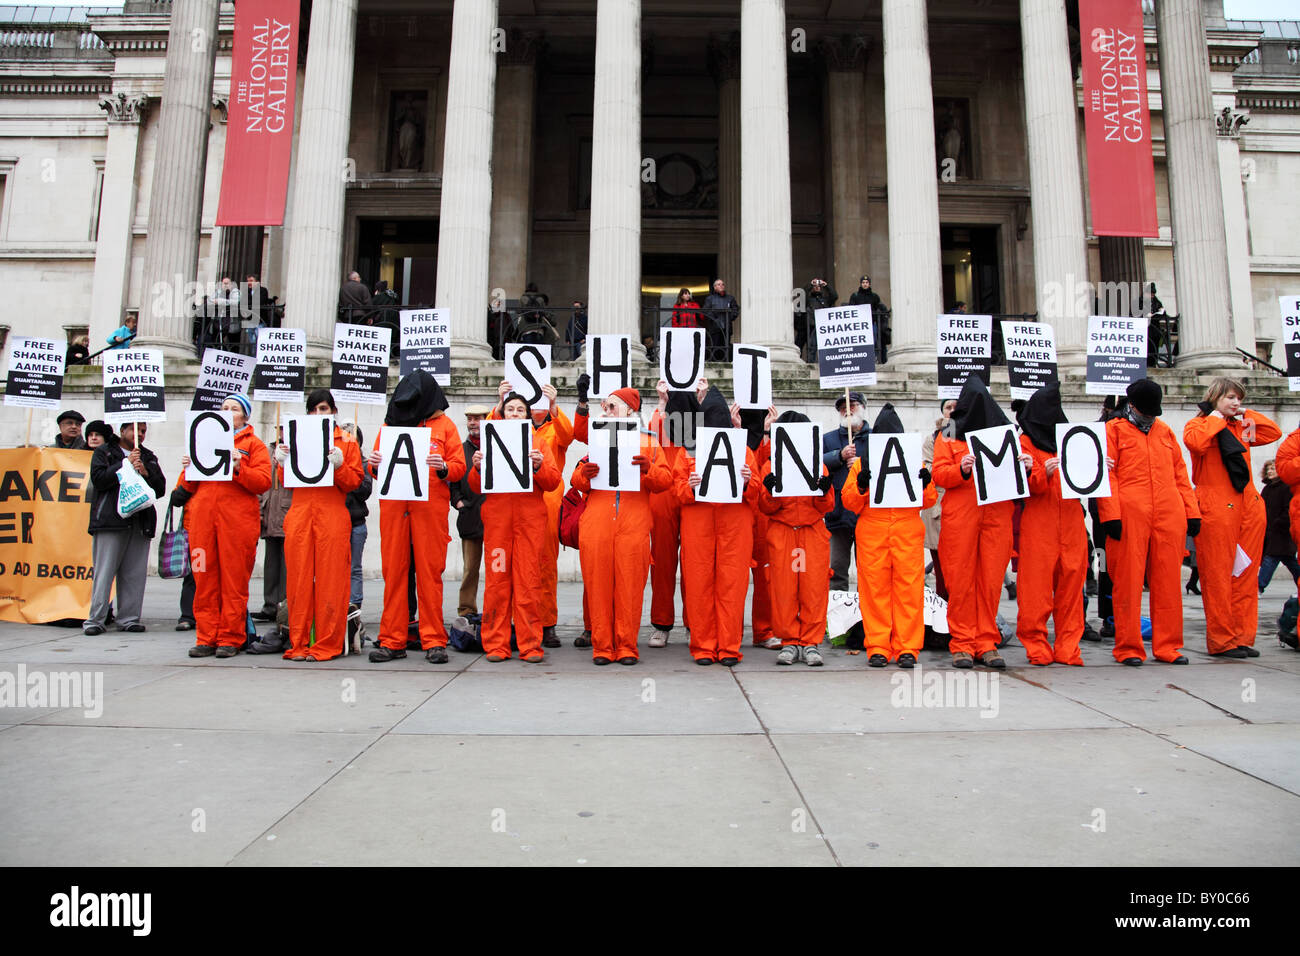 Les protestataires à au-delà des mots : témoin silencieux de l'injustice. La campagne de Guantanamo Londres Banque D'Images